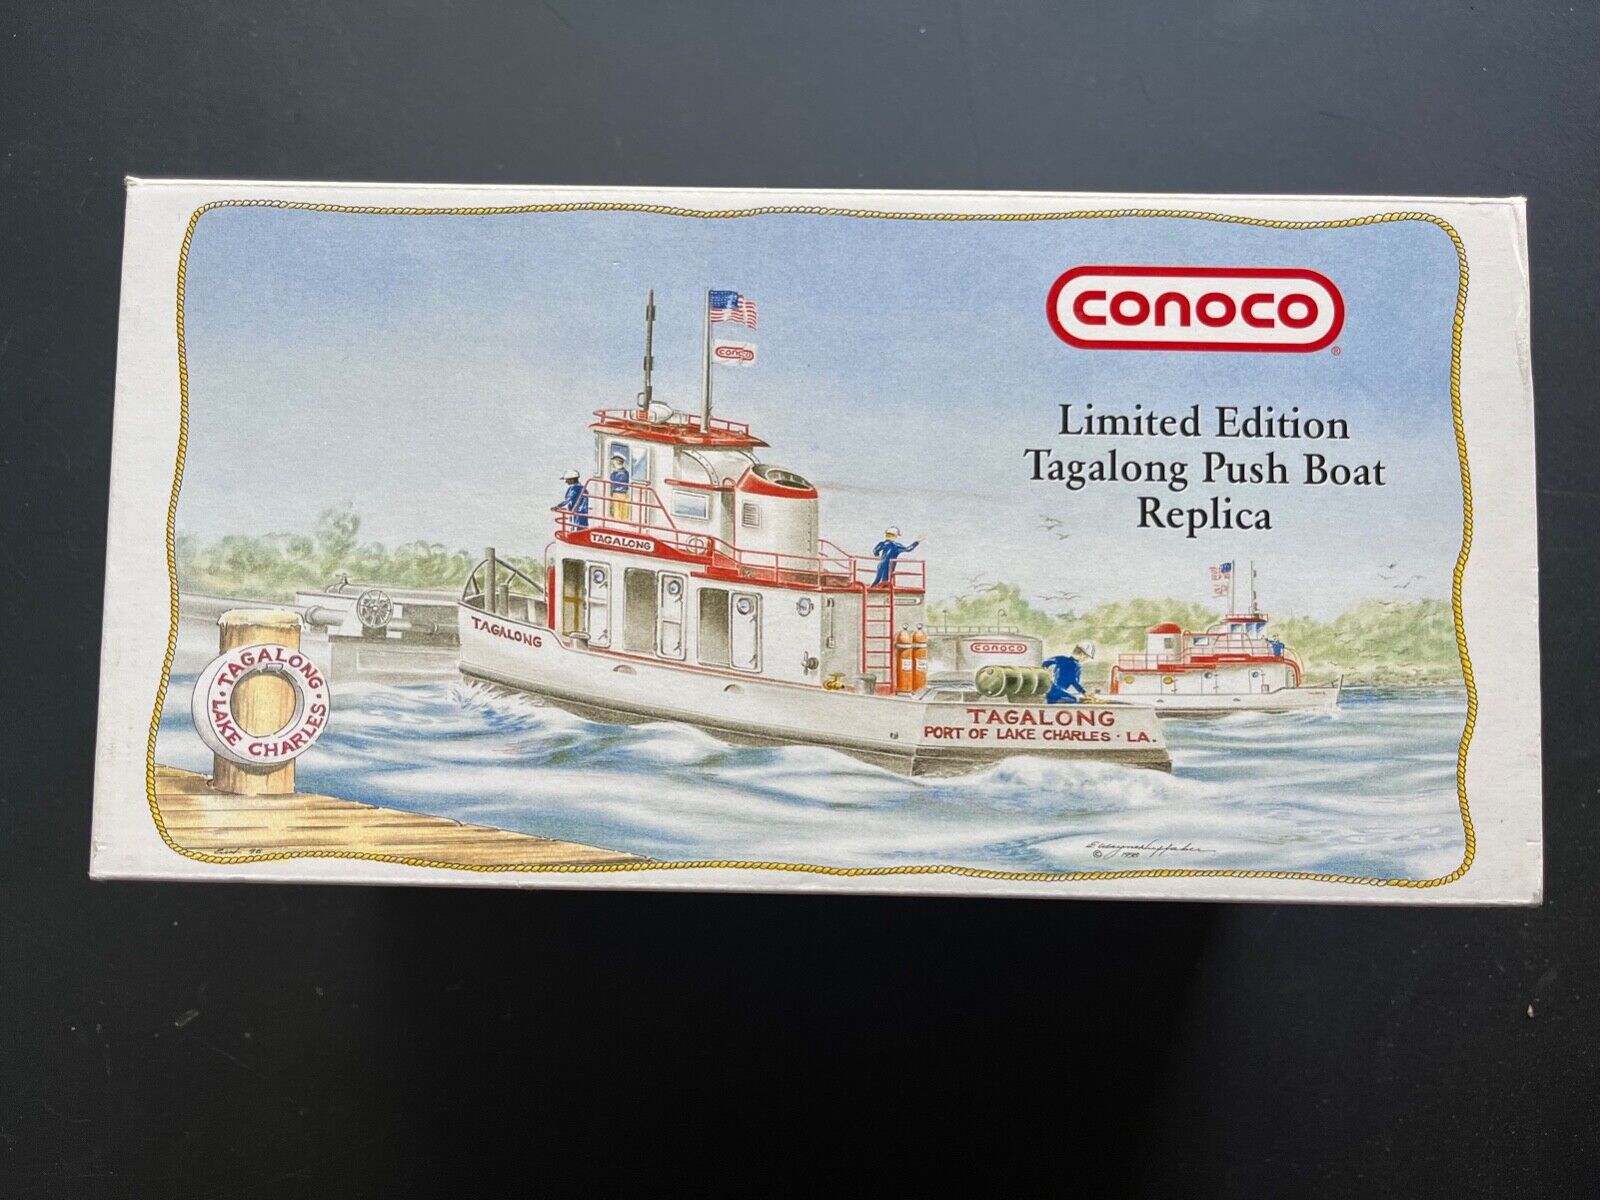 Conoco Limited Edition 1973 Tagalong Push Boat Replica